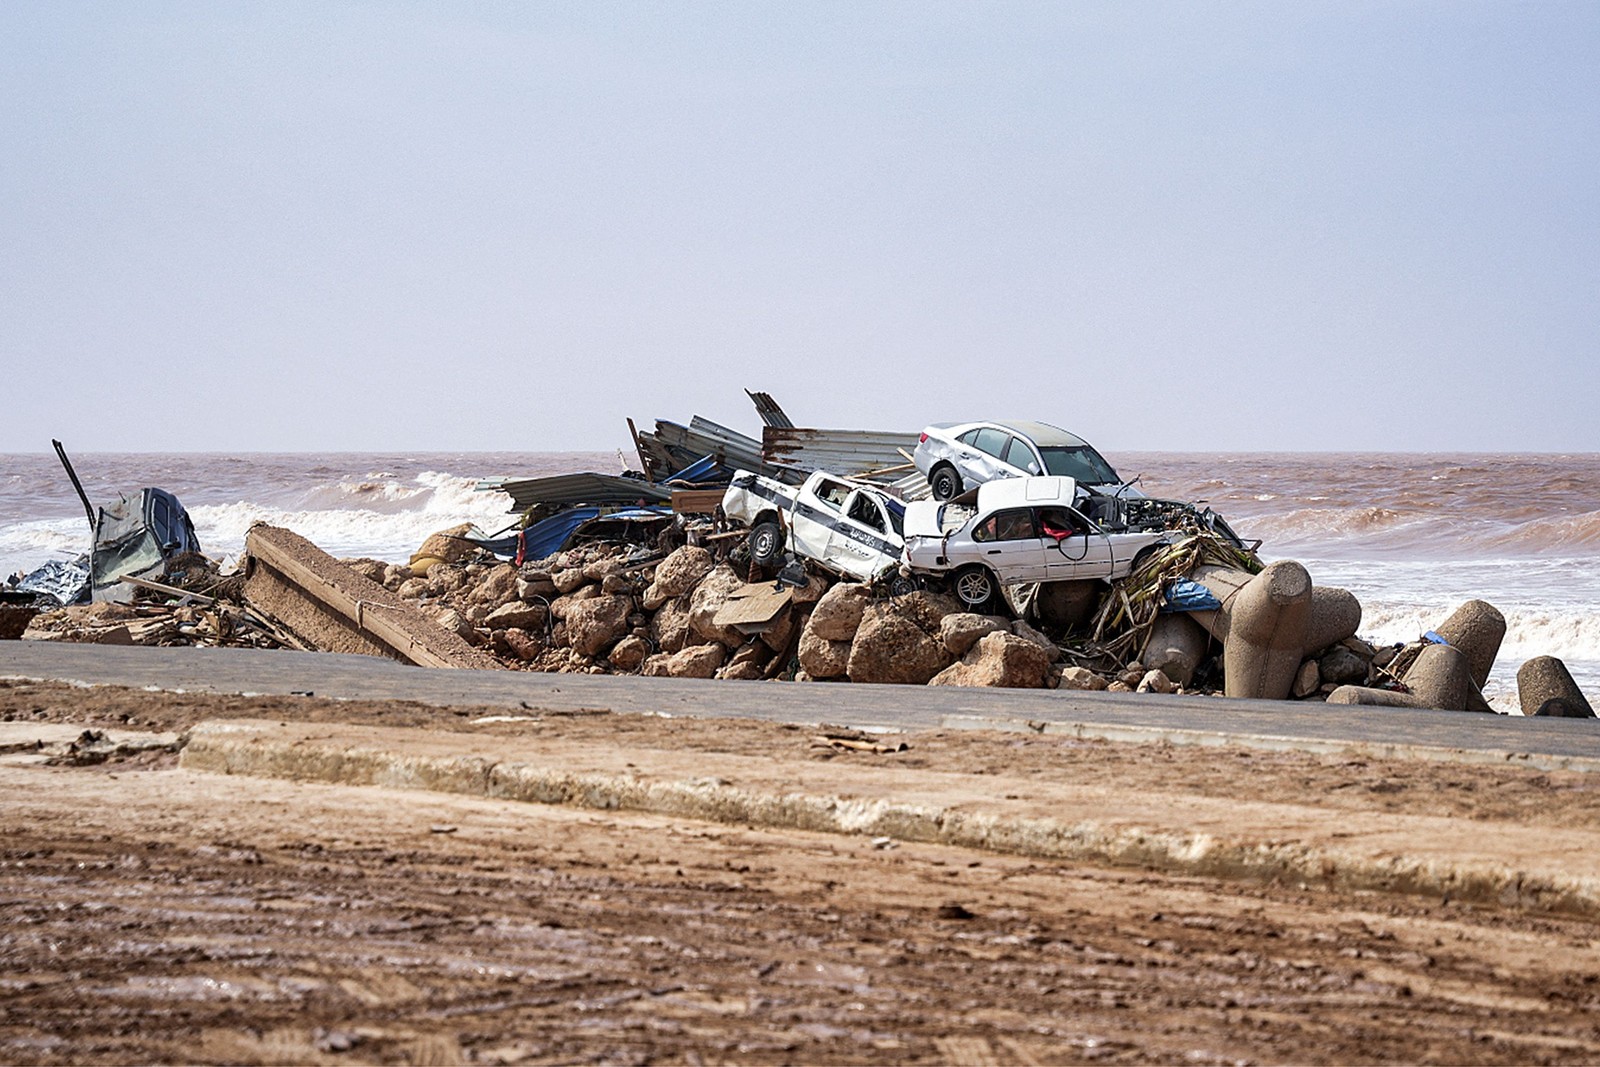 Veículos empilhados ao longo de uma estrada costeira na cidade de Derna, no leste da Líbia — Foto: Assessoria de Imprensa do Primeiro Ministro da Líbia / AFP